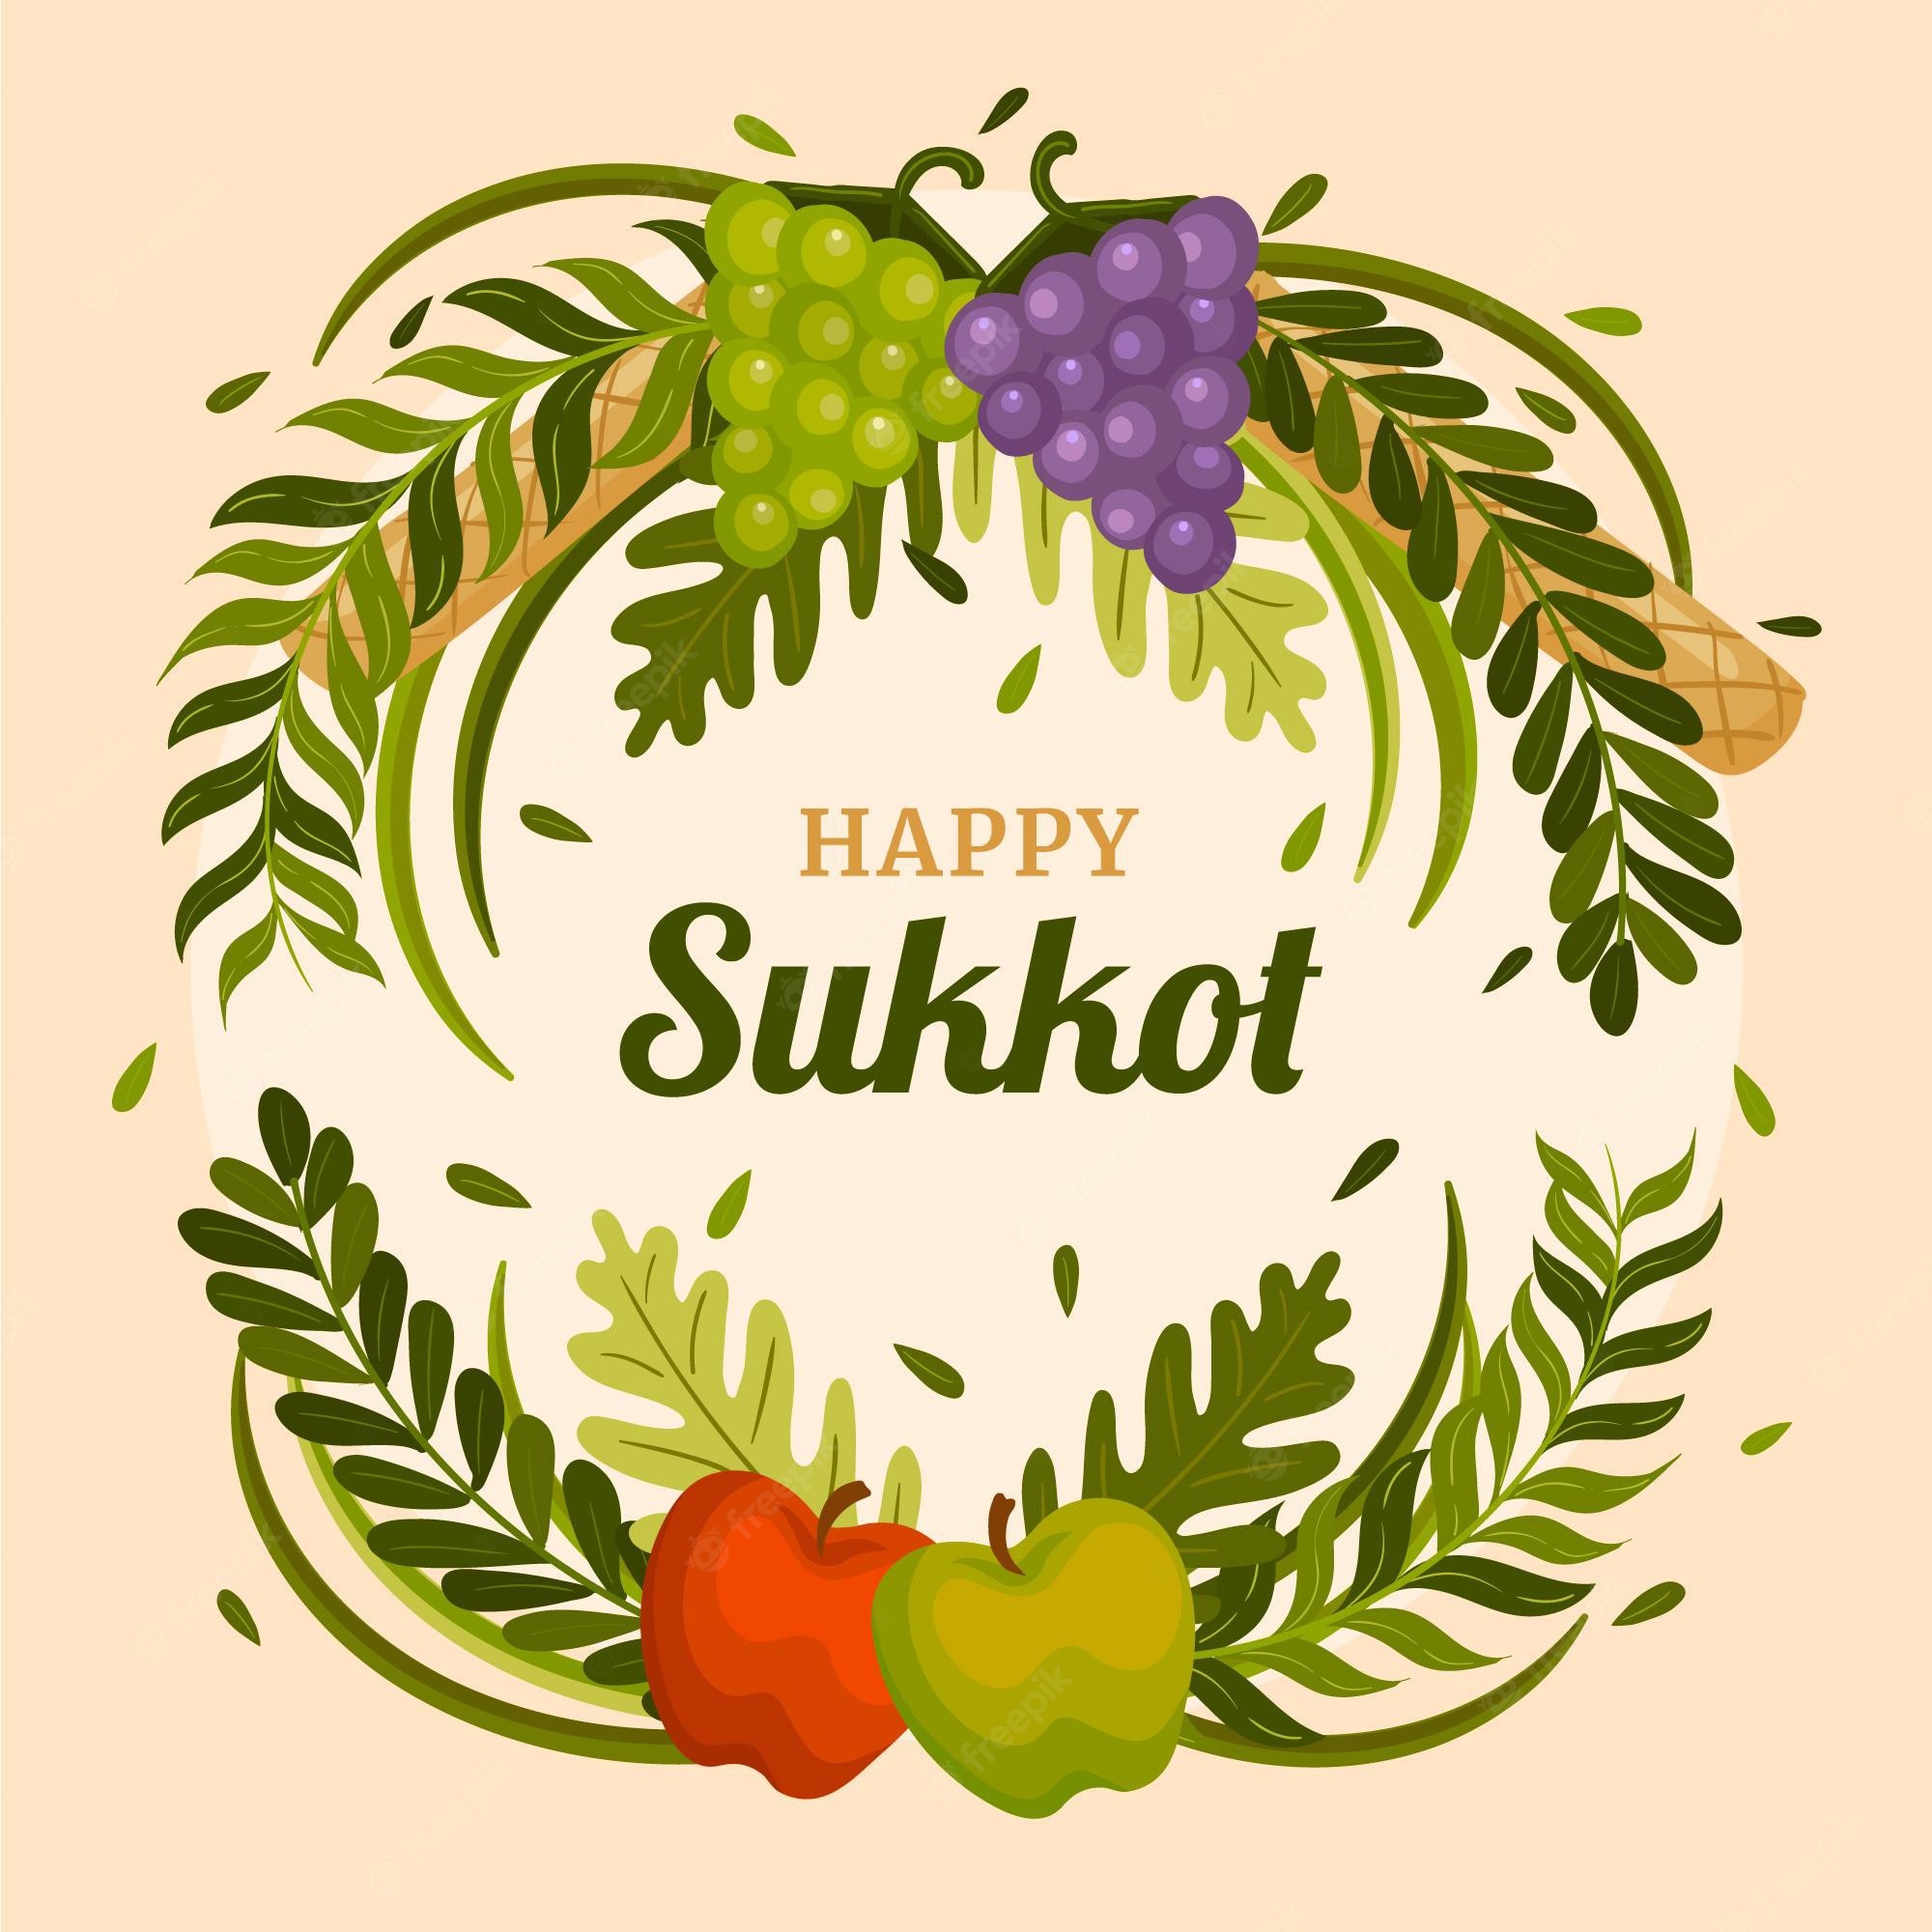 Happy sukkot images